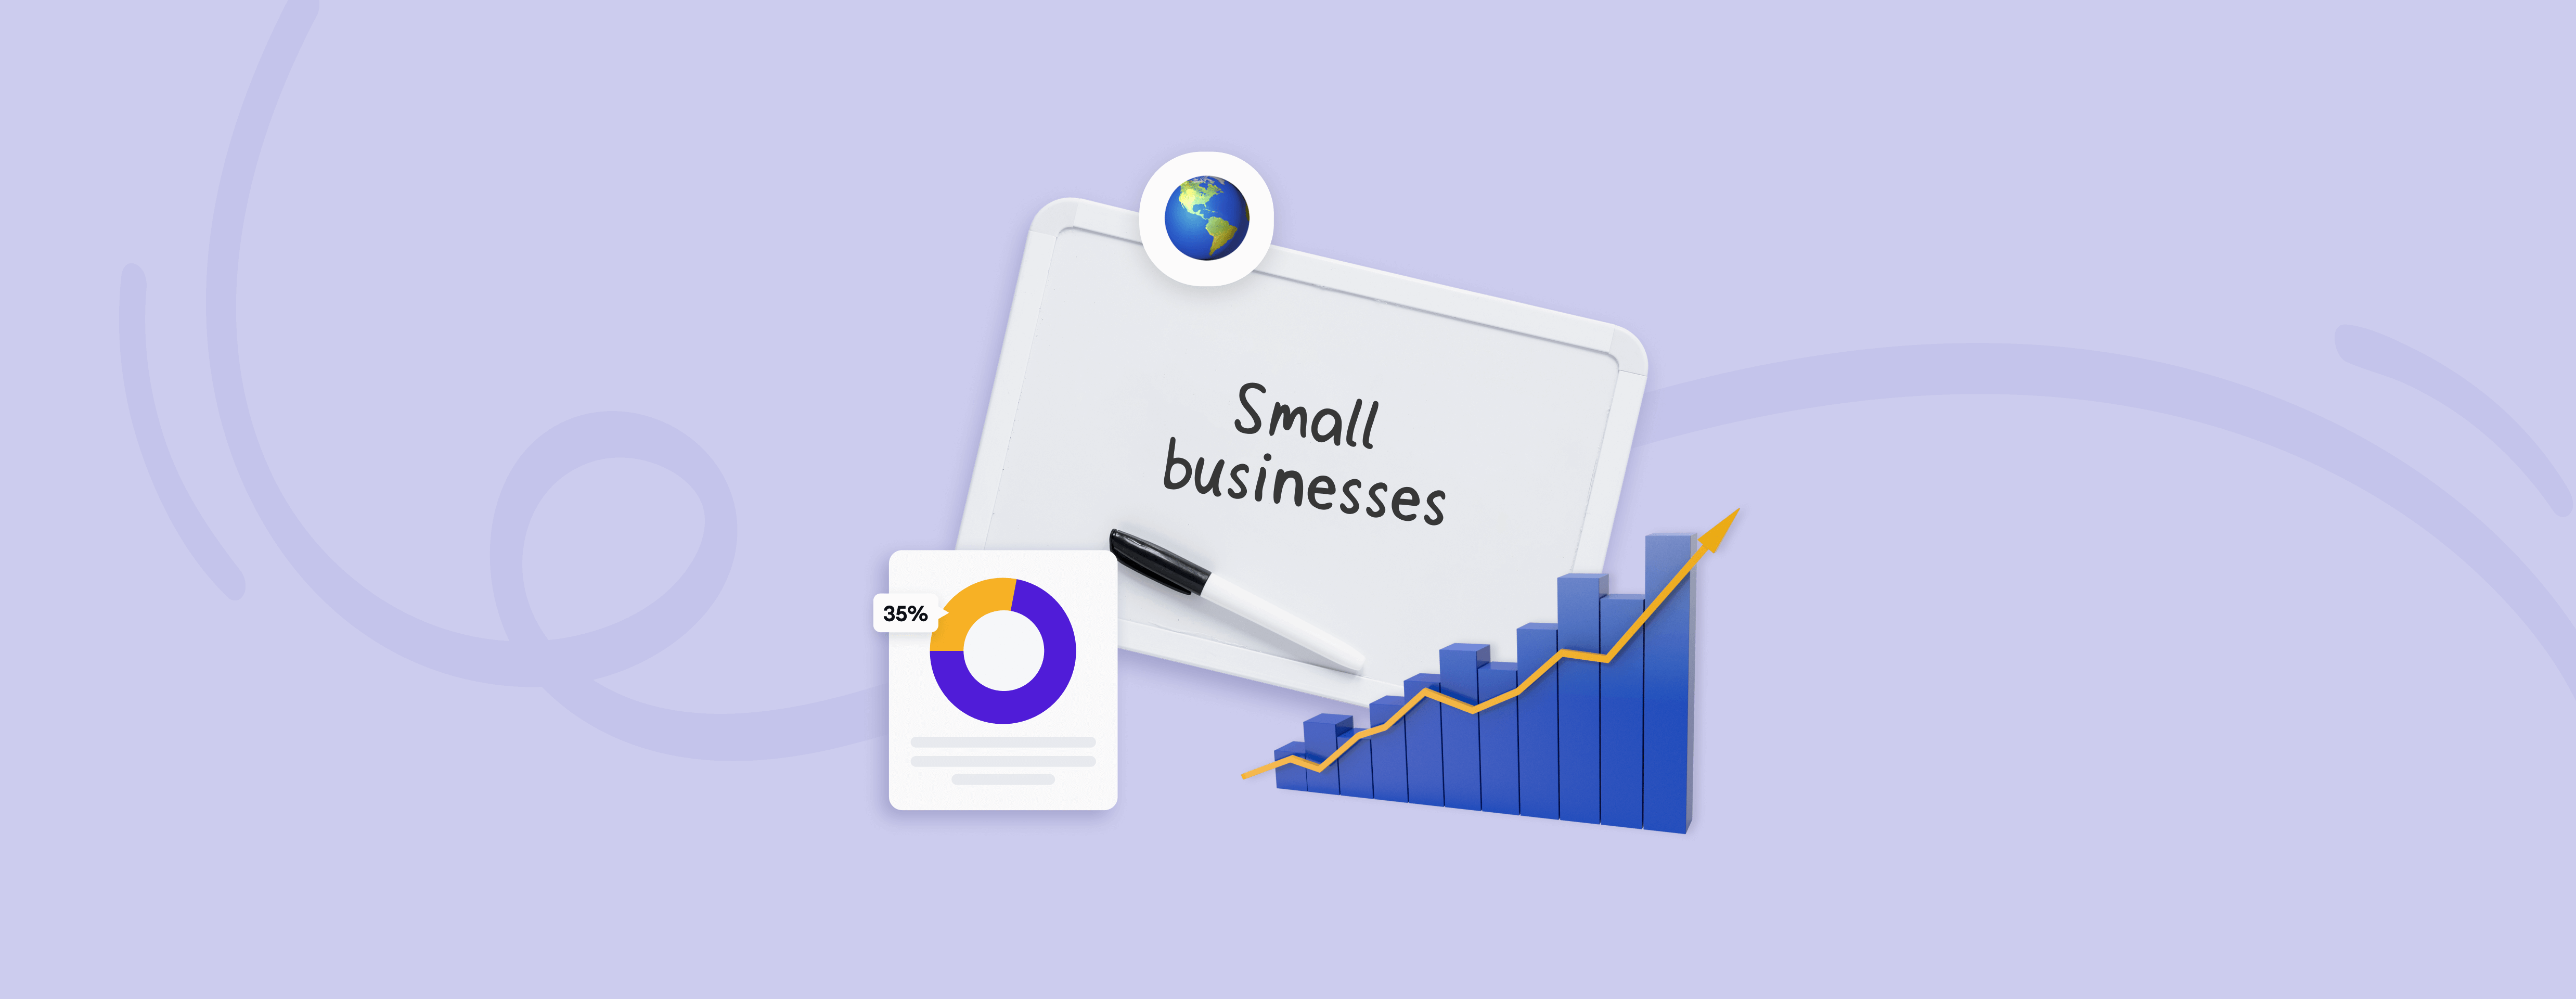 Key Small Business Statistics - June 2016